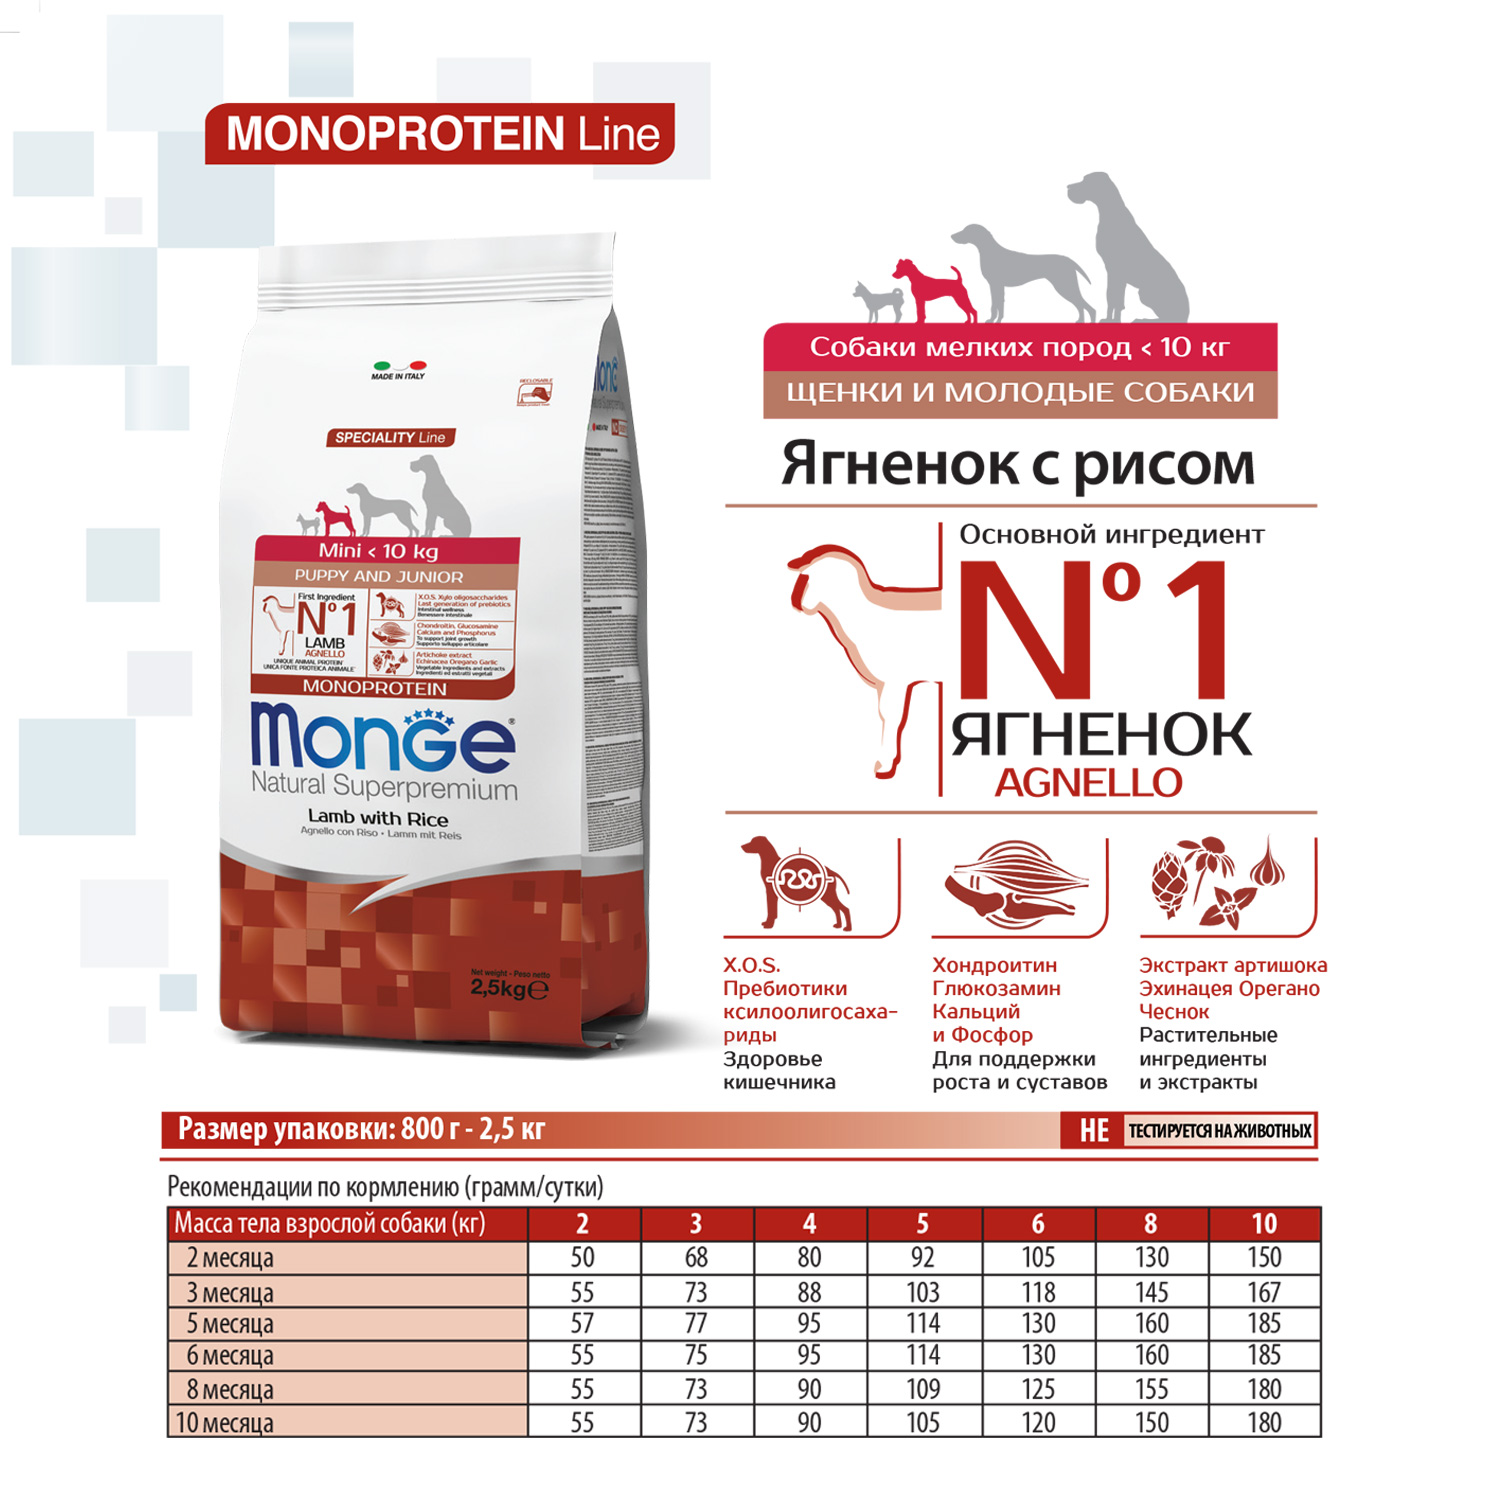 Сухой корм Monge Dog Speciality Line Monoprotein Mini корм для щенков и беременных собак мелких пород, из ягненка с рисом 2,5 кг